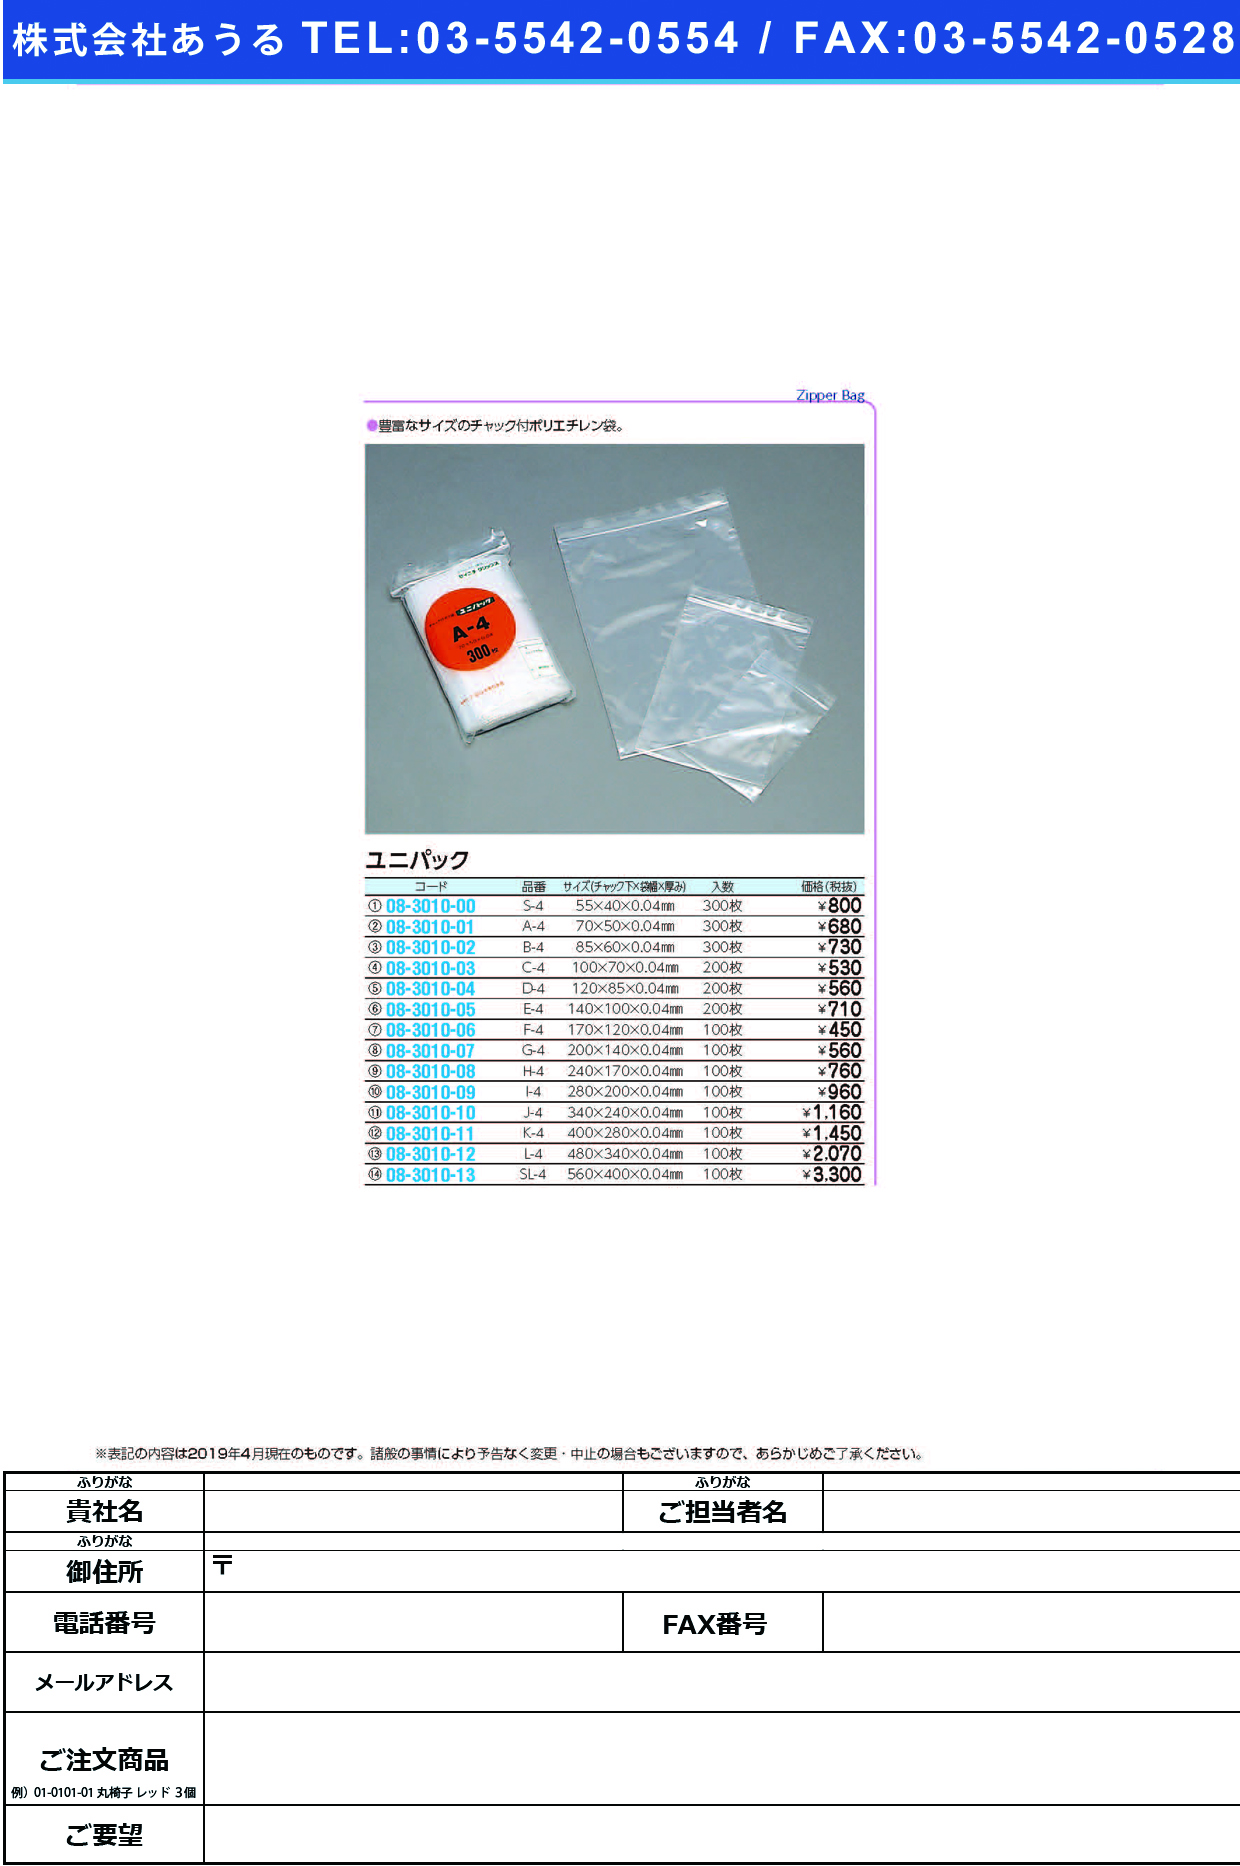 (08-3010-02)ユニパック B-4(85X60MM)300ﾏｲ ﾕﾆﾊﾟｯｸ【1袋単位】【2019年カタログ商品】